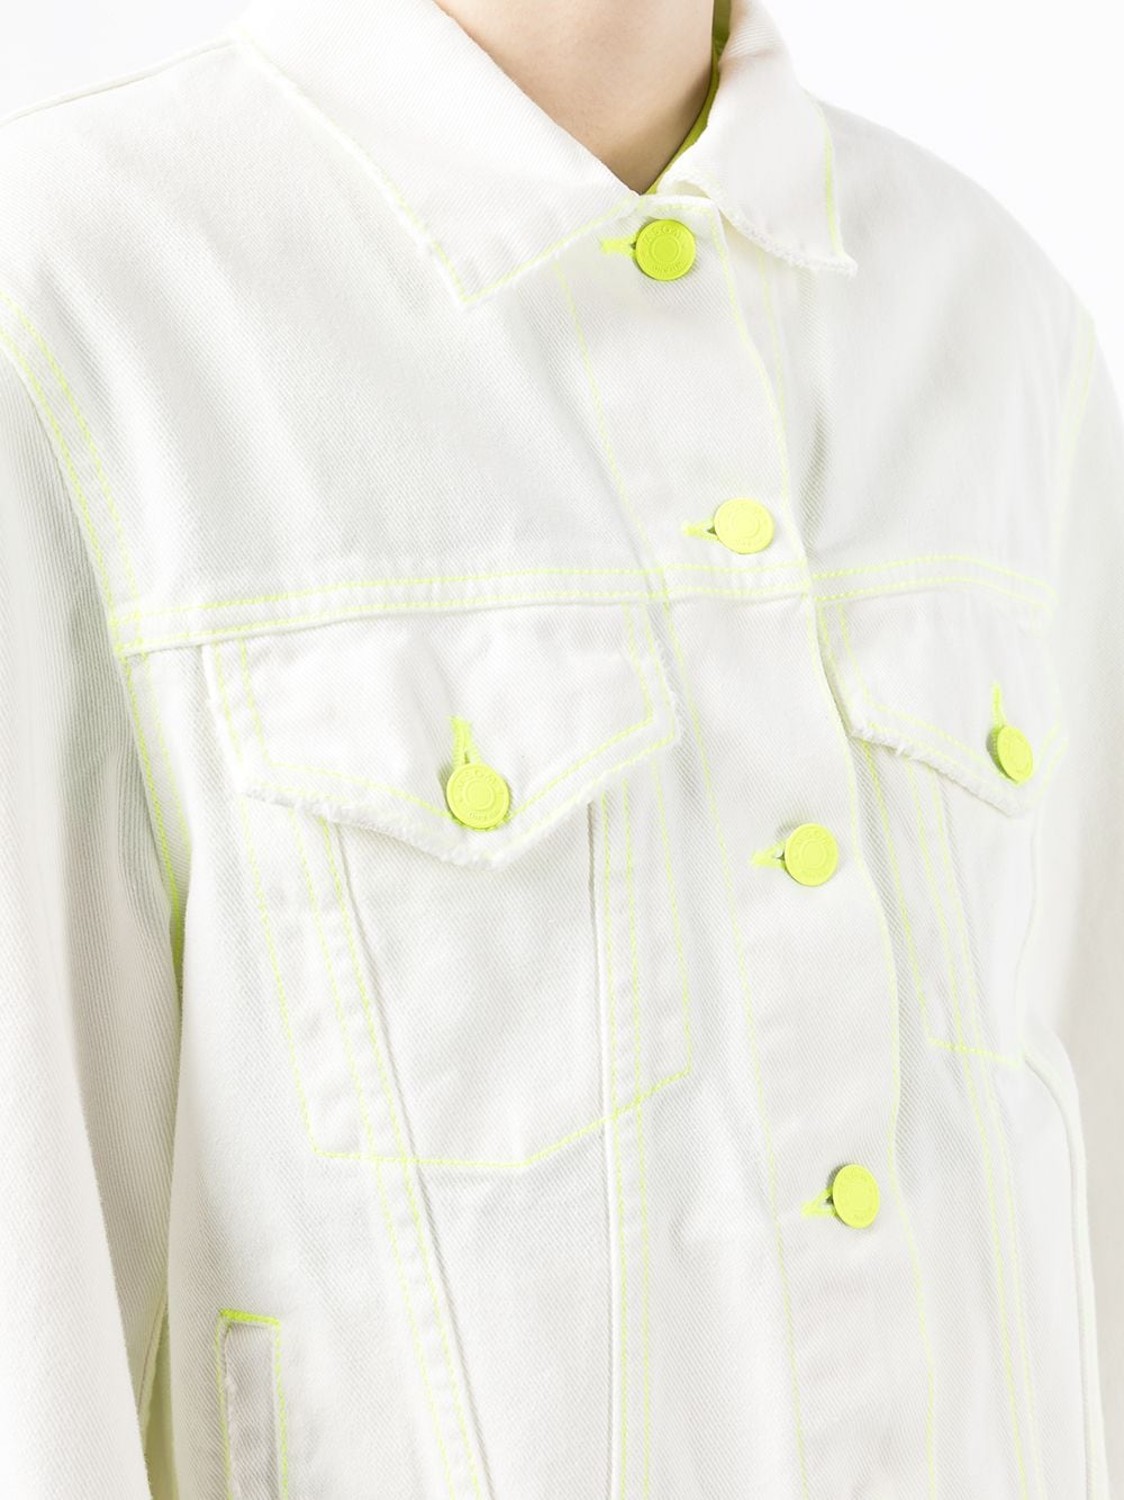 shop MSGM  Giacche: Giacche MSGM, giacca di jeans, modello corto, chiusura frontale con bottoni, maniche lunghe con polsino, bianca con dettagli fluorescenti.

Composizione: 100% cotone. number 2312